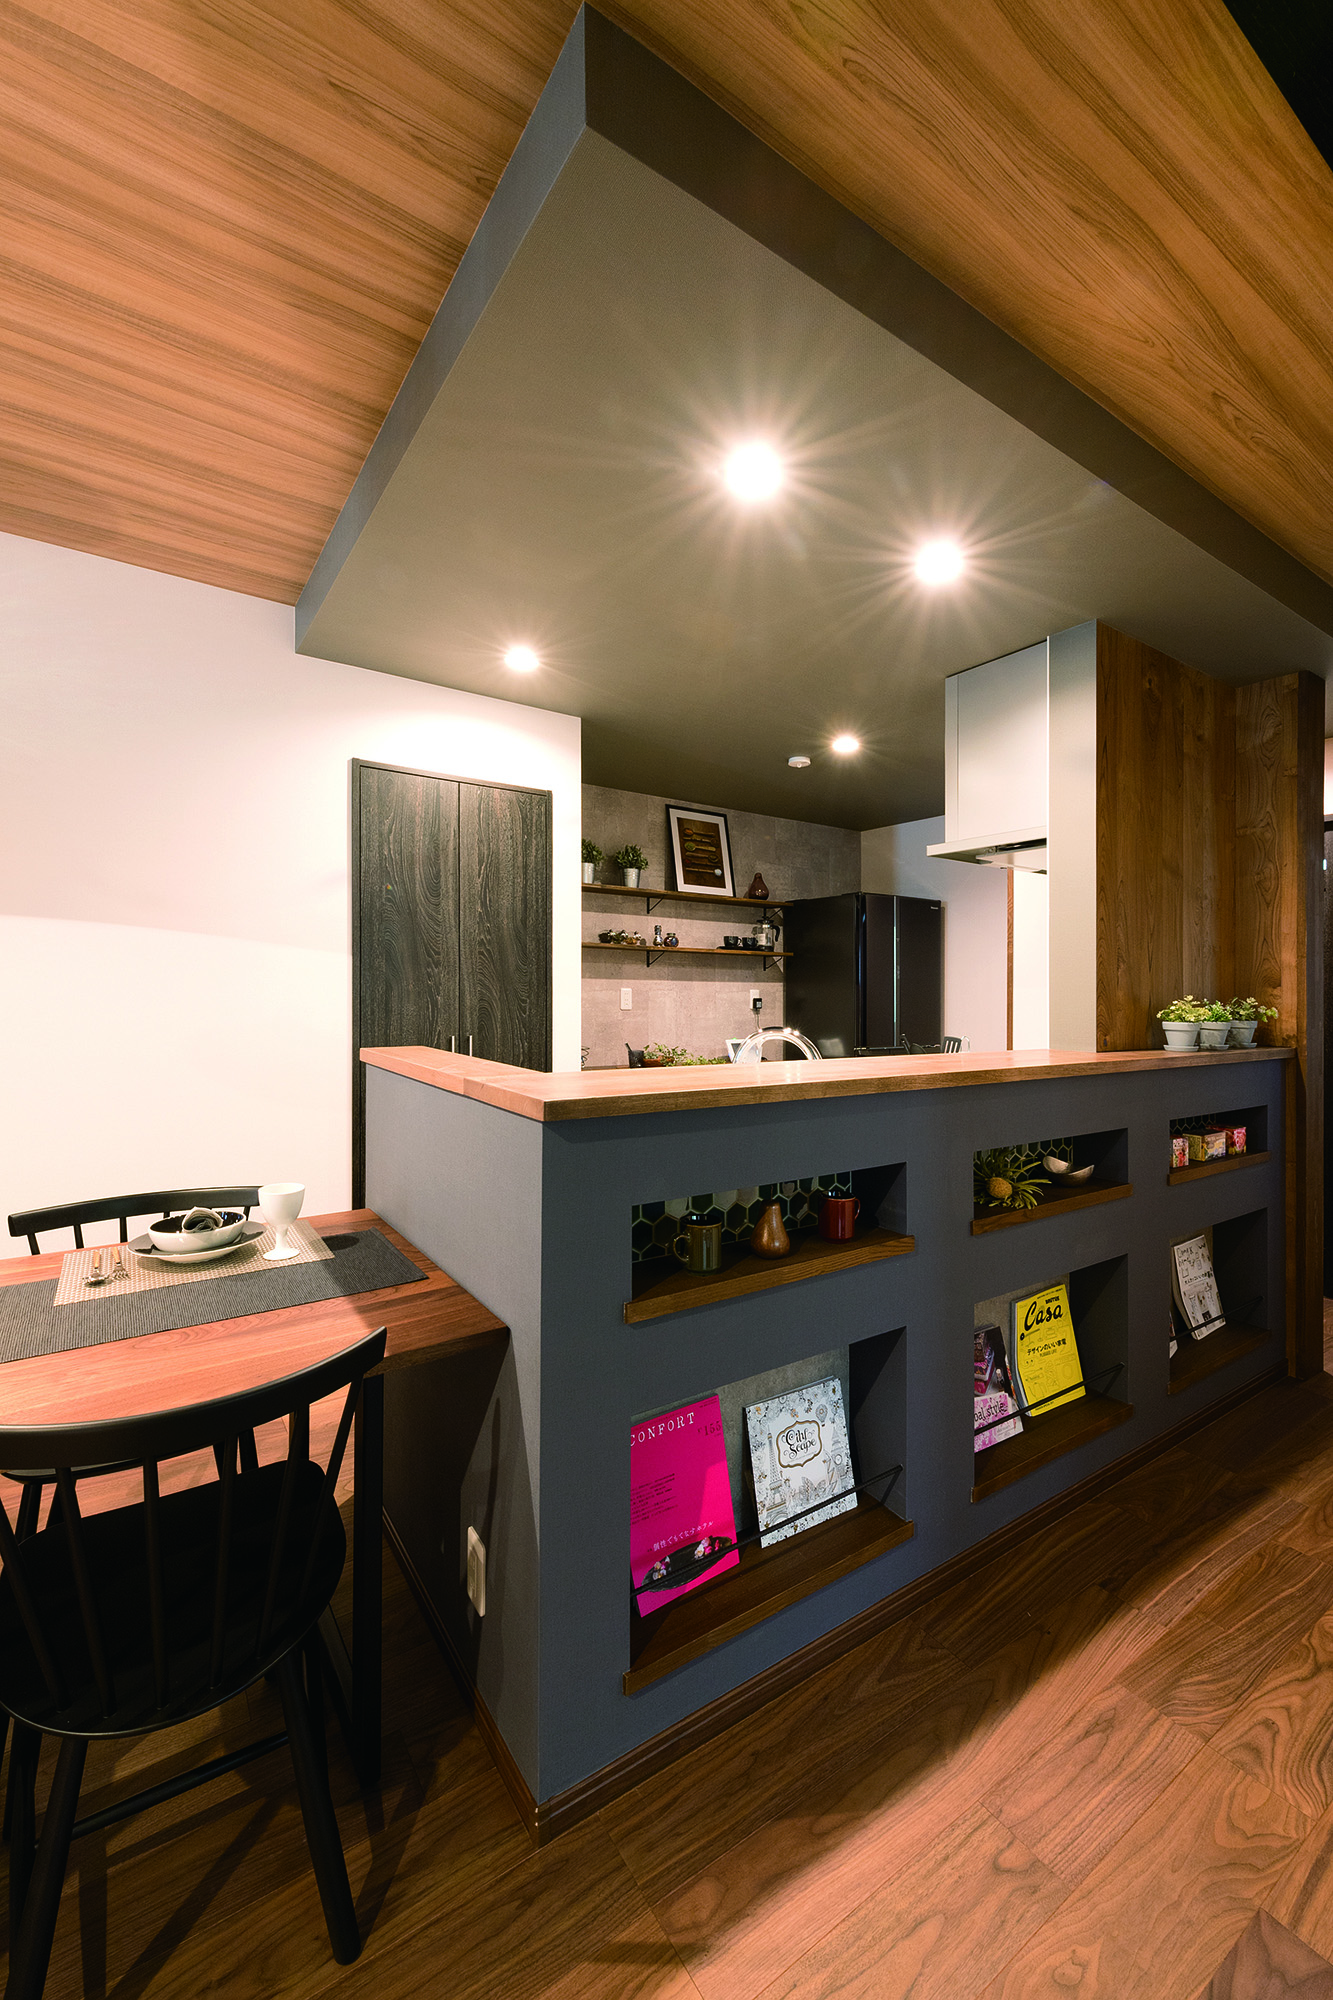 カフェ空間をイメージしたカウンター付きのオープンキッチン。カウンターを一段上げて、料理をしている手元を隠しつつ、飾り棚の空間を確保。